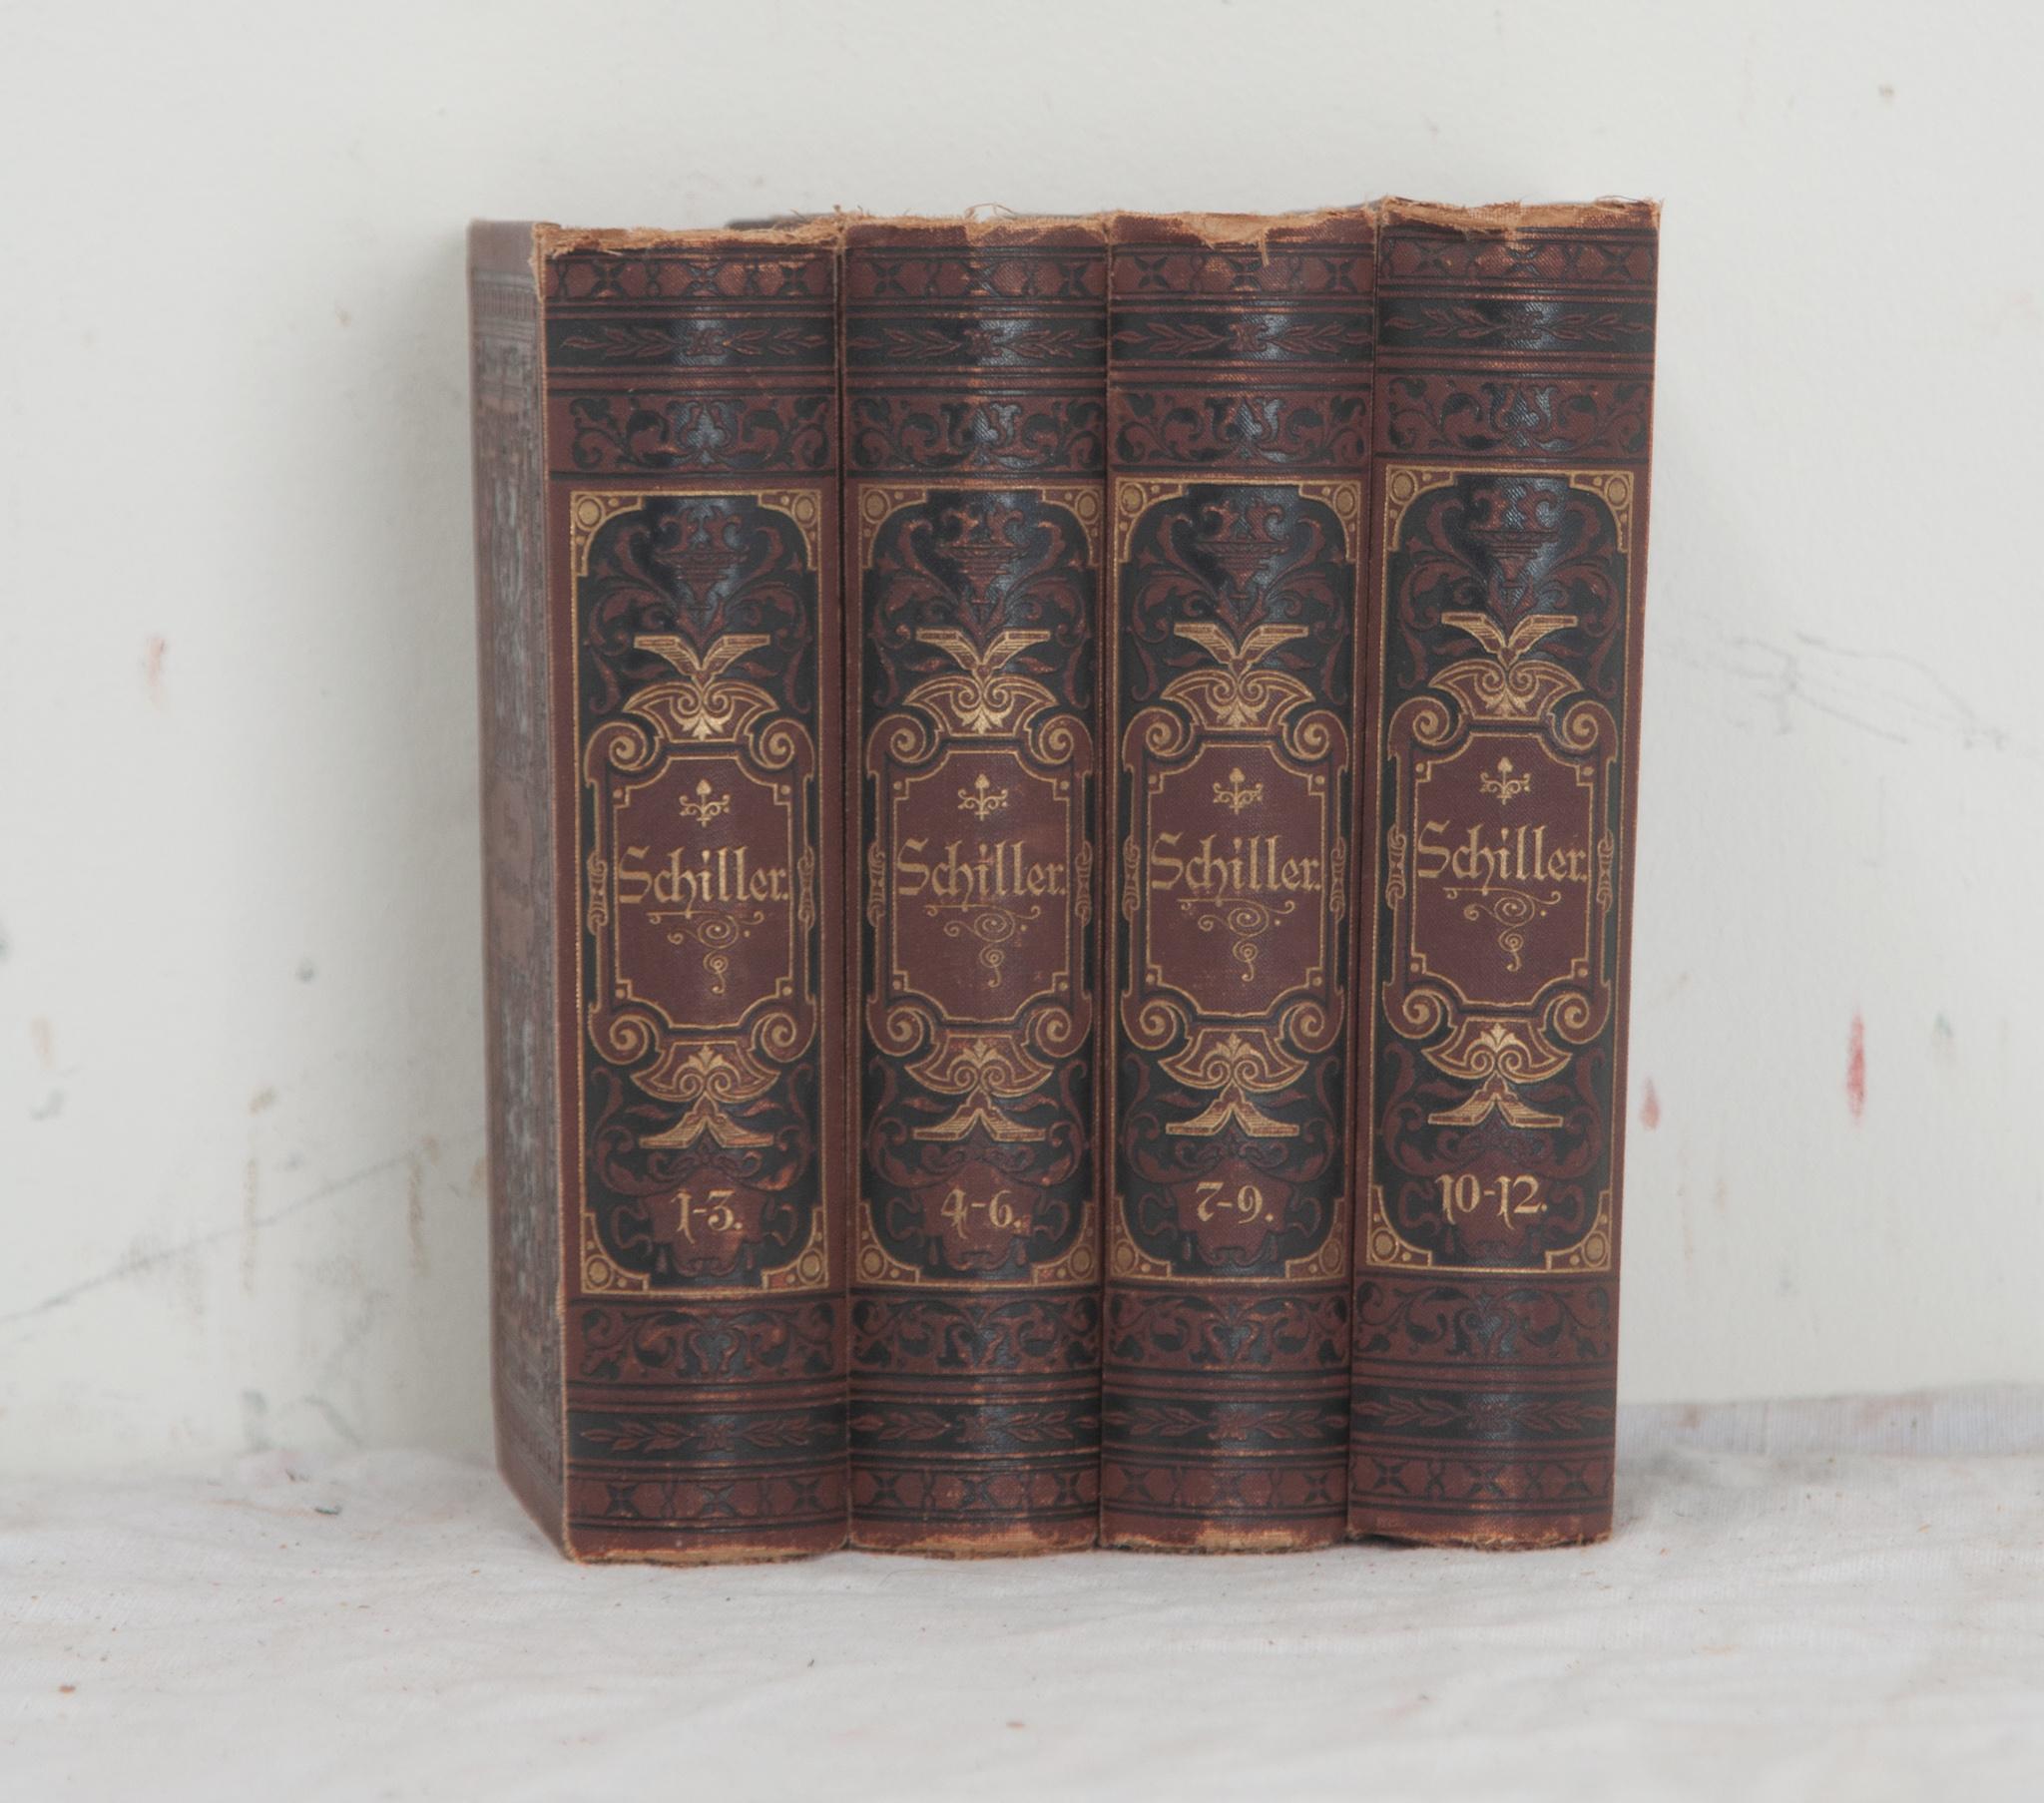 Other Set of 4 Books by German Poet Friedrich von Schiller For Sale